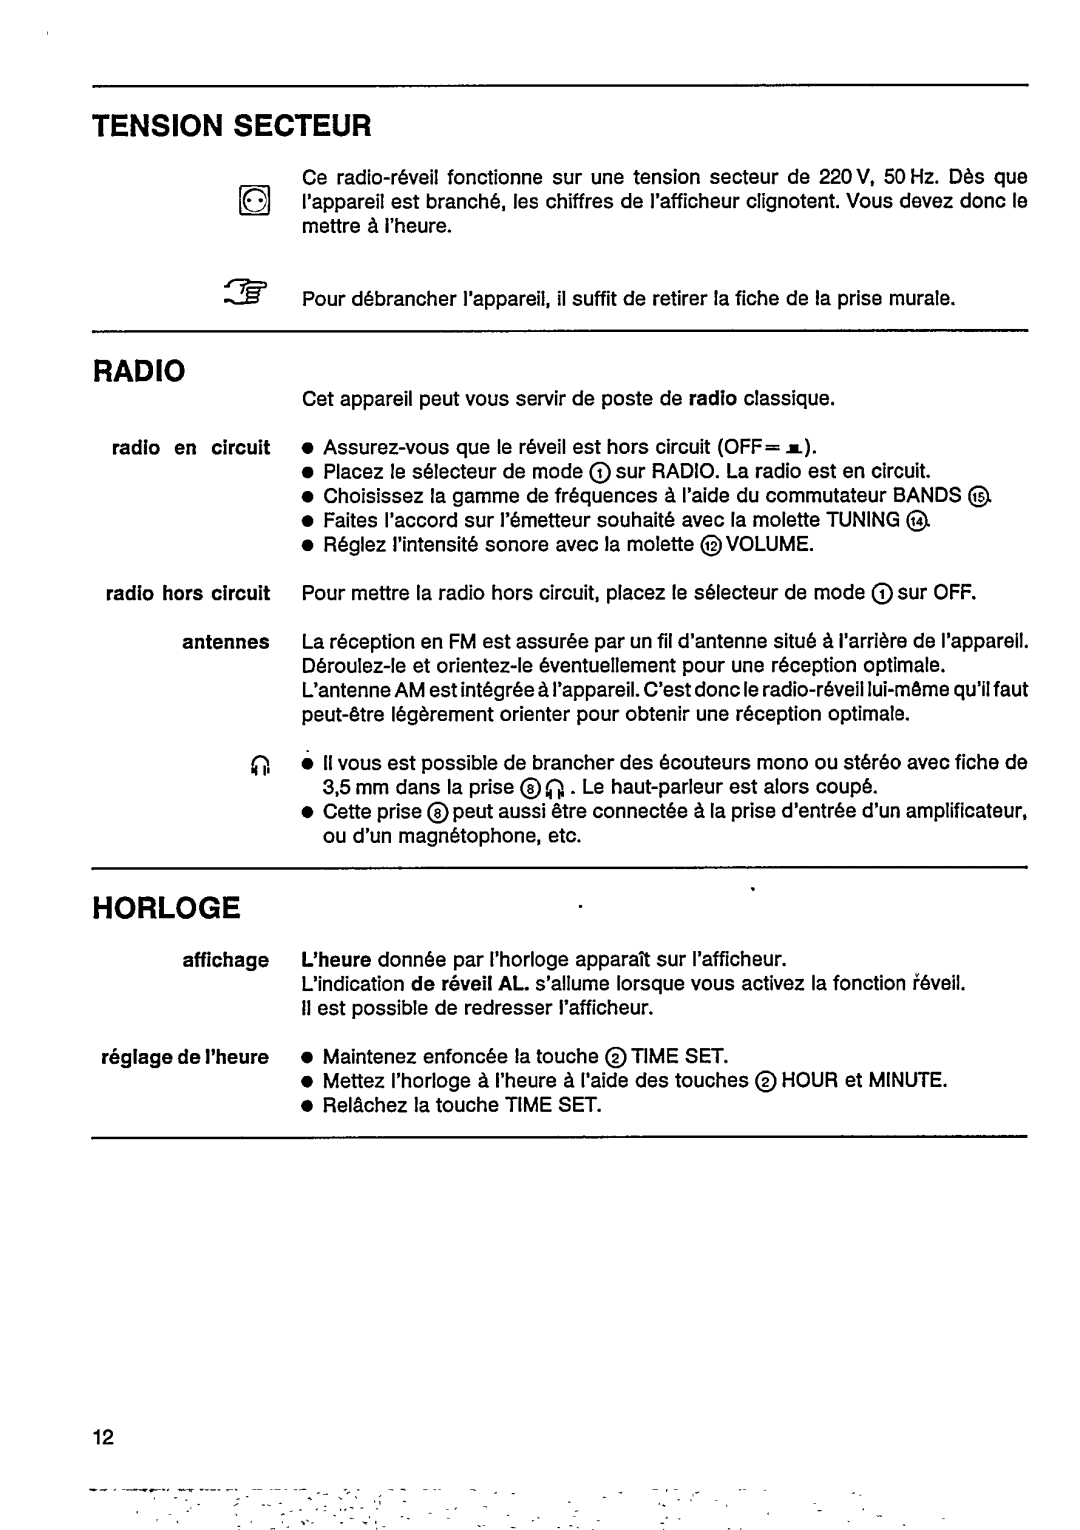 Philips AJ 3800, AJ 3802 manual 